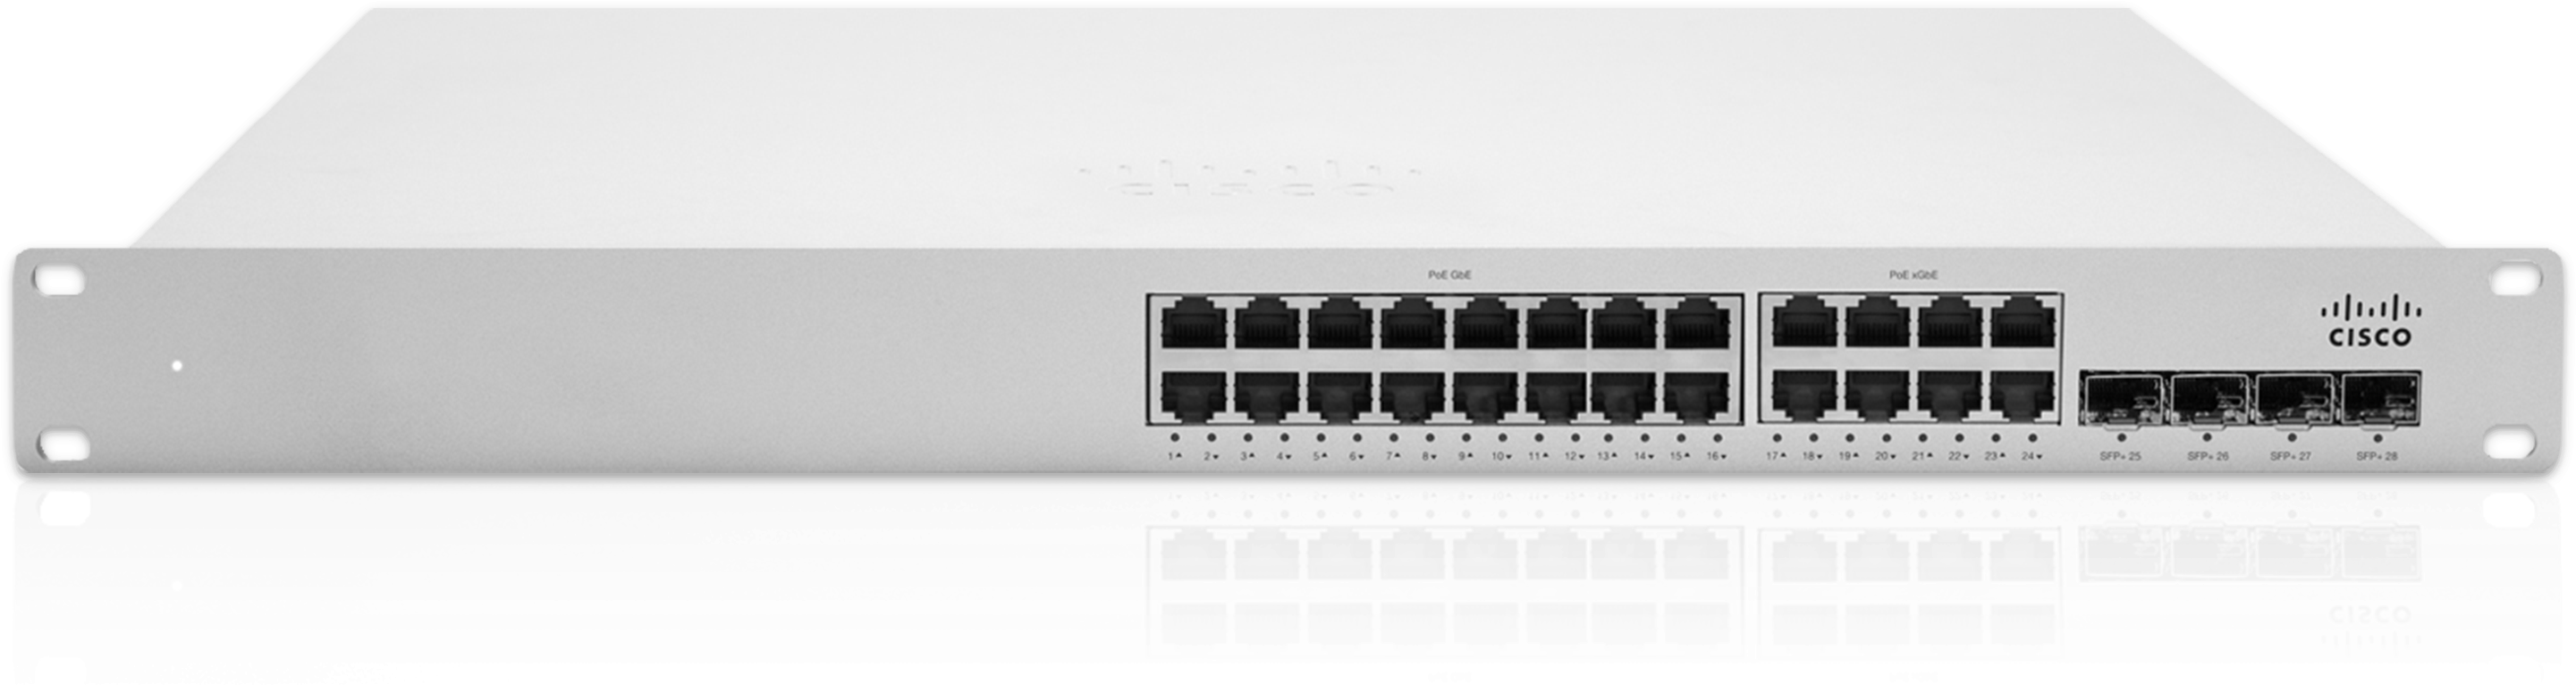 Cisco Meraki Ms350-24x Switch - Cisco Meraki Mx64w Cloud Managed - Security Appliance (3000x906), Png Download